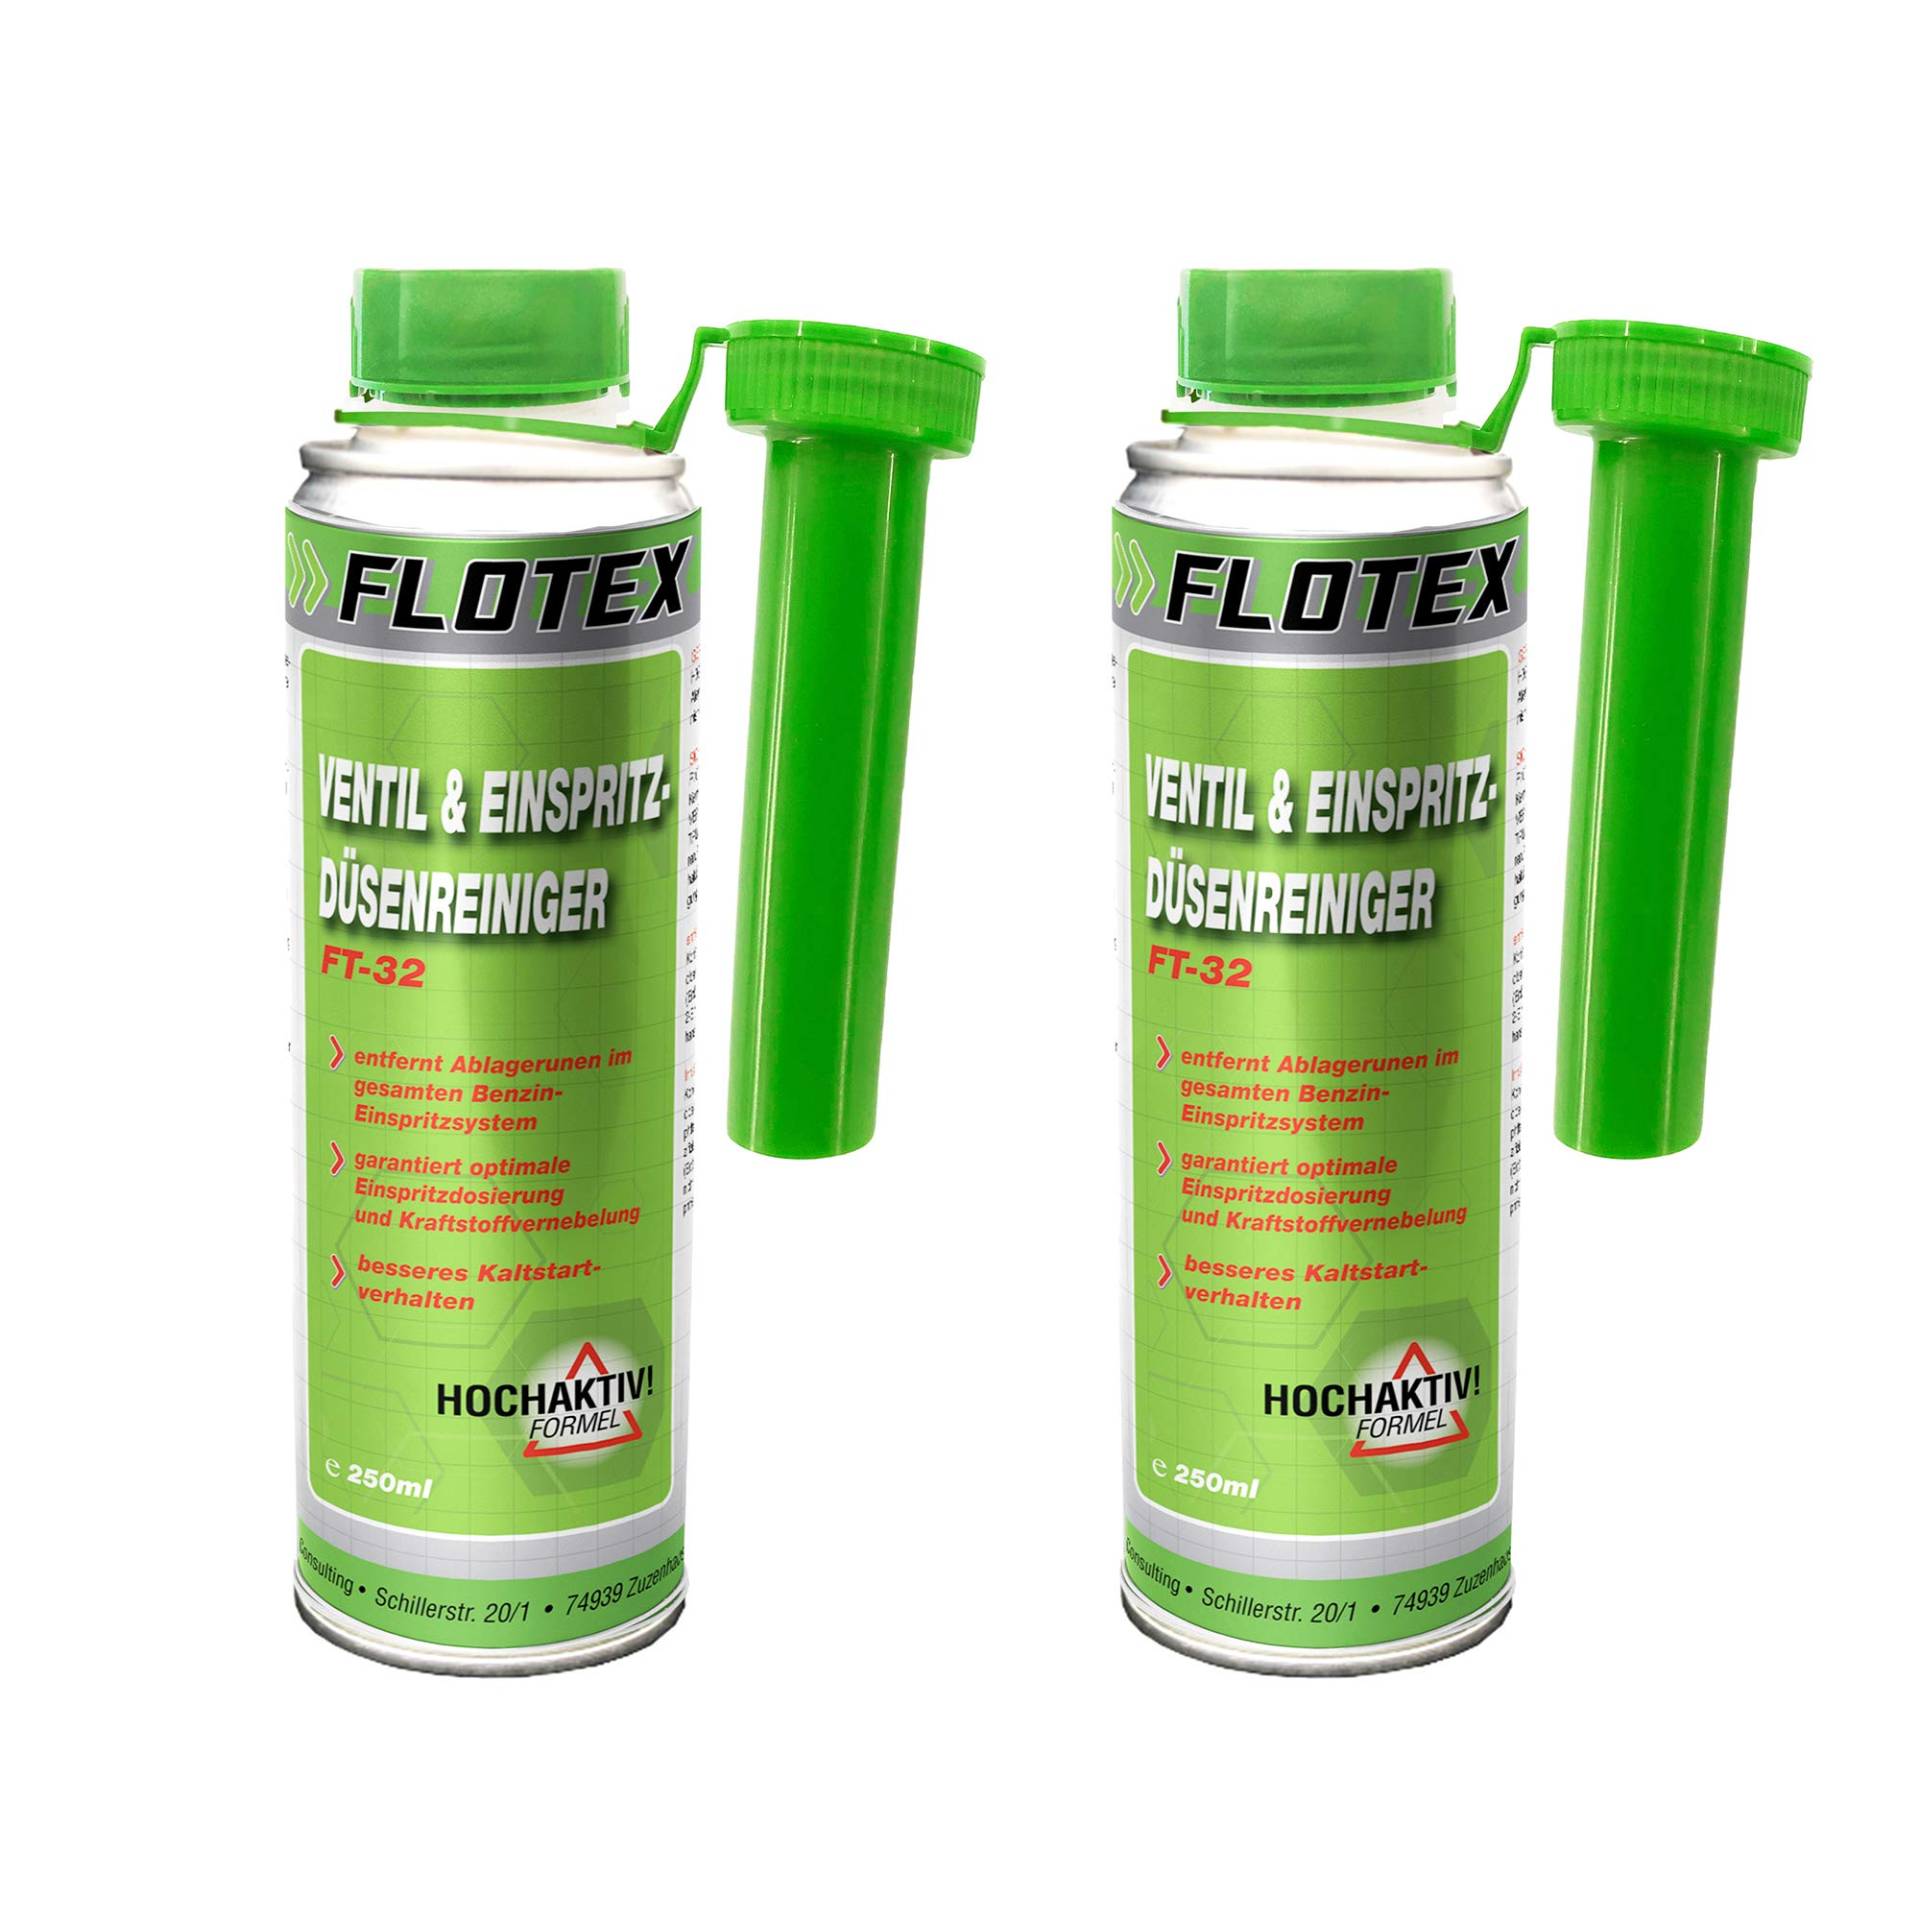 Flotex Ventil & Einspritzdüsenreiniger, 2 x 250ml Additiv entfernt Ablagerungen und reinigt Benzin Einspritzsystem von Flotex